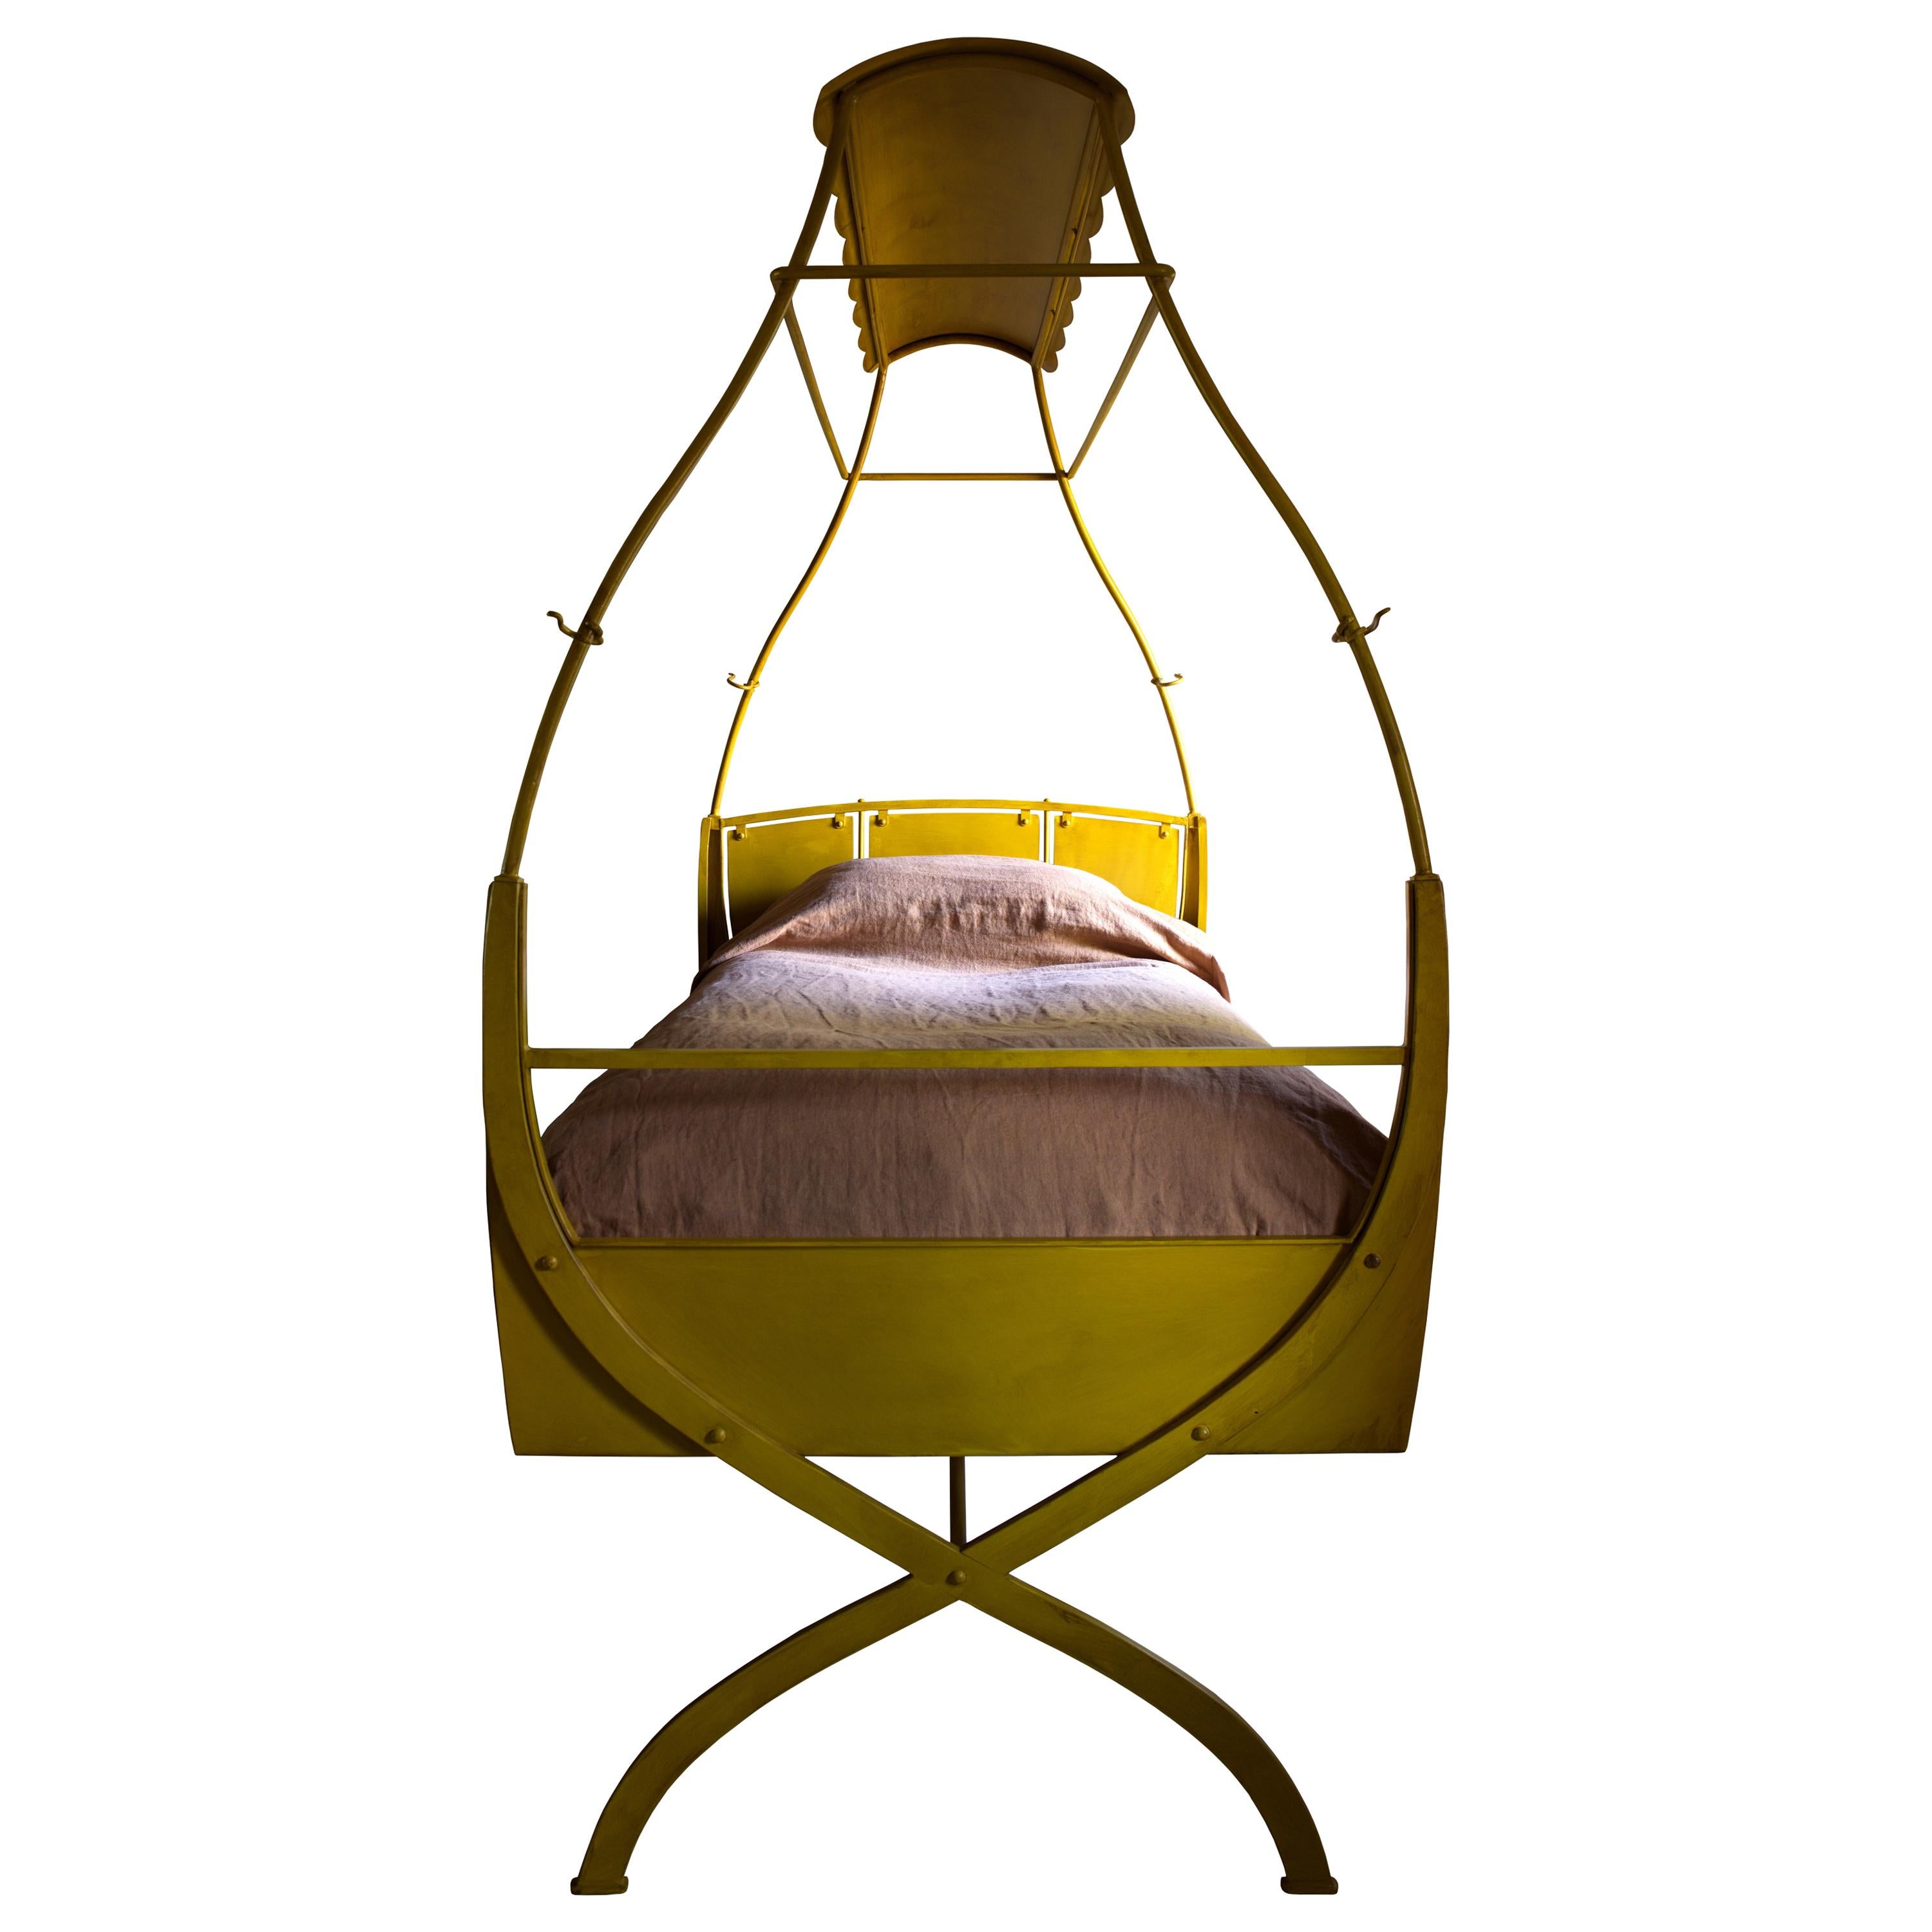 Kanarienvogelbett:: X-Rahmen-Bett aus lackiertem Stahl:: teils Fahrgeschäft:: teils Schaukel im Angebot